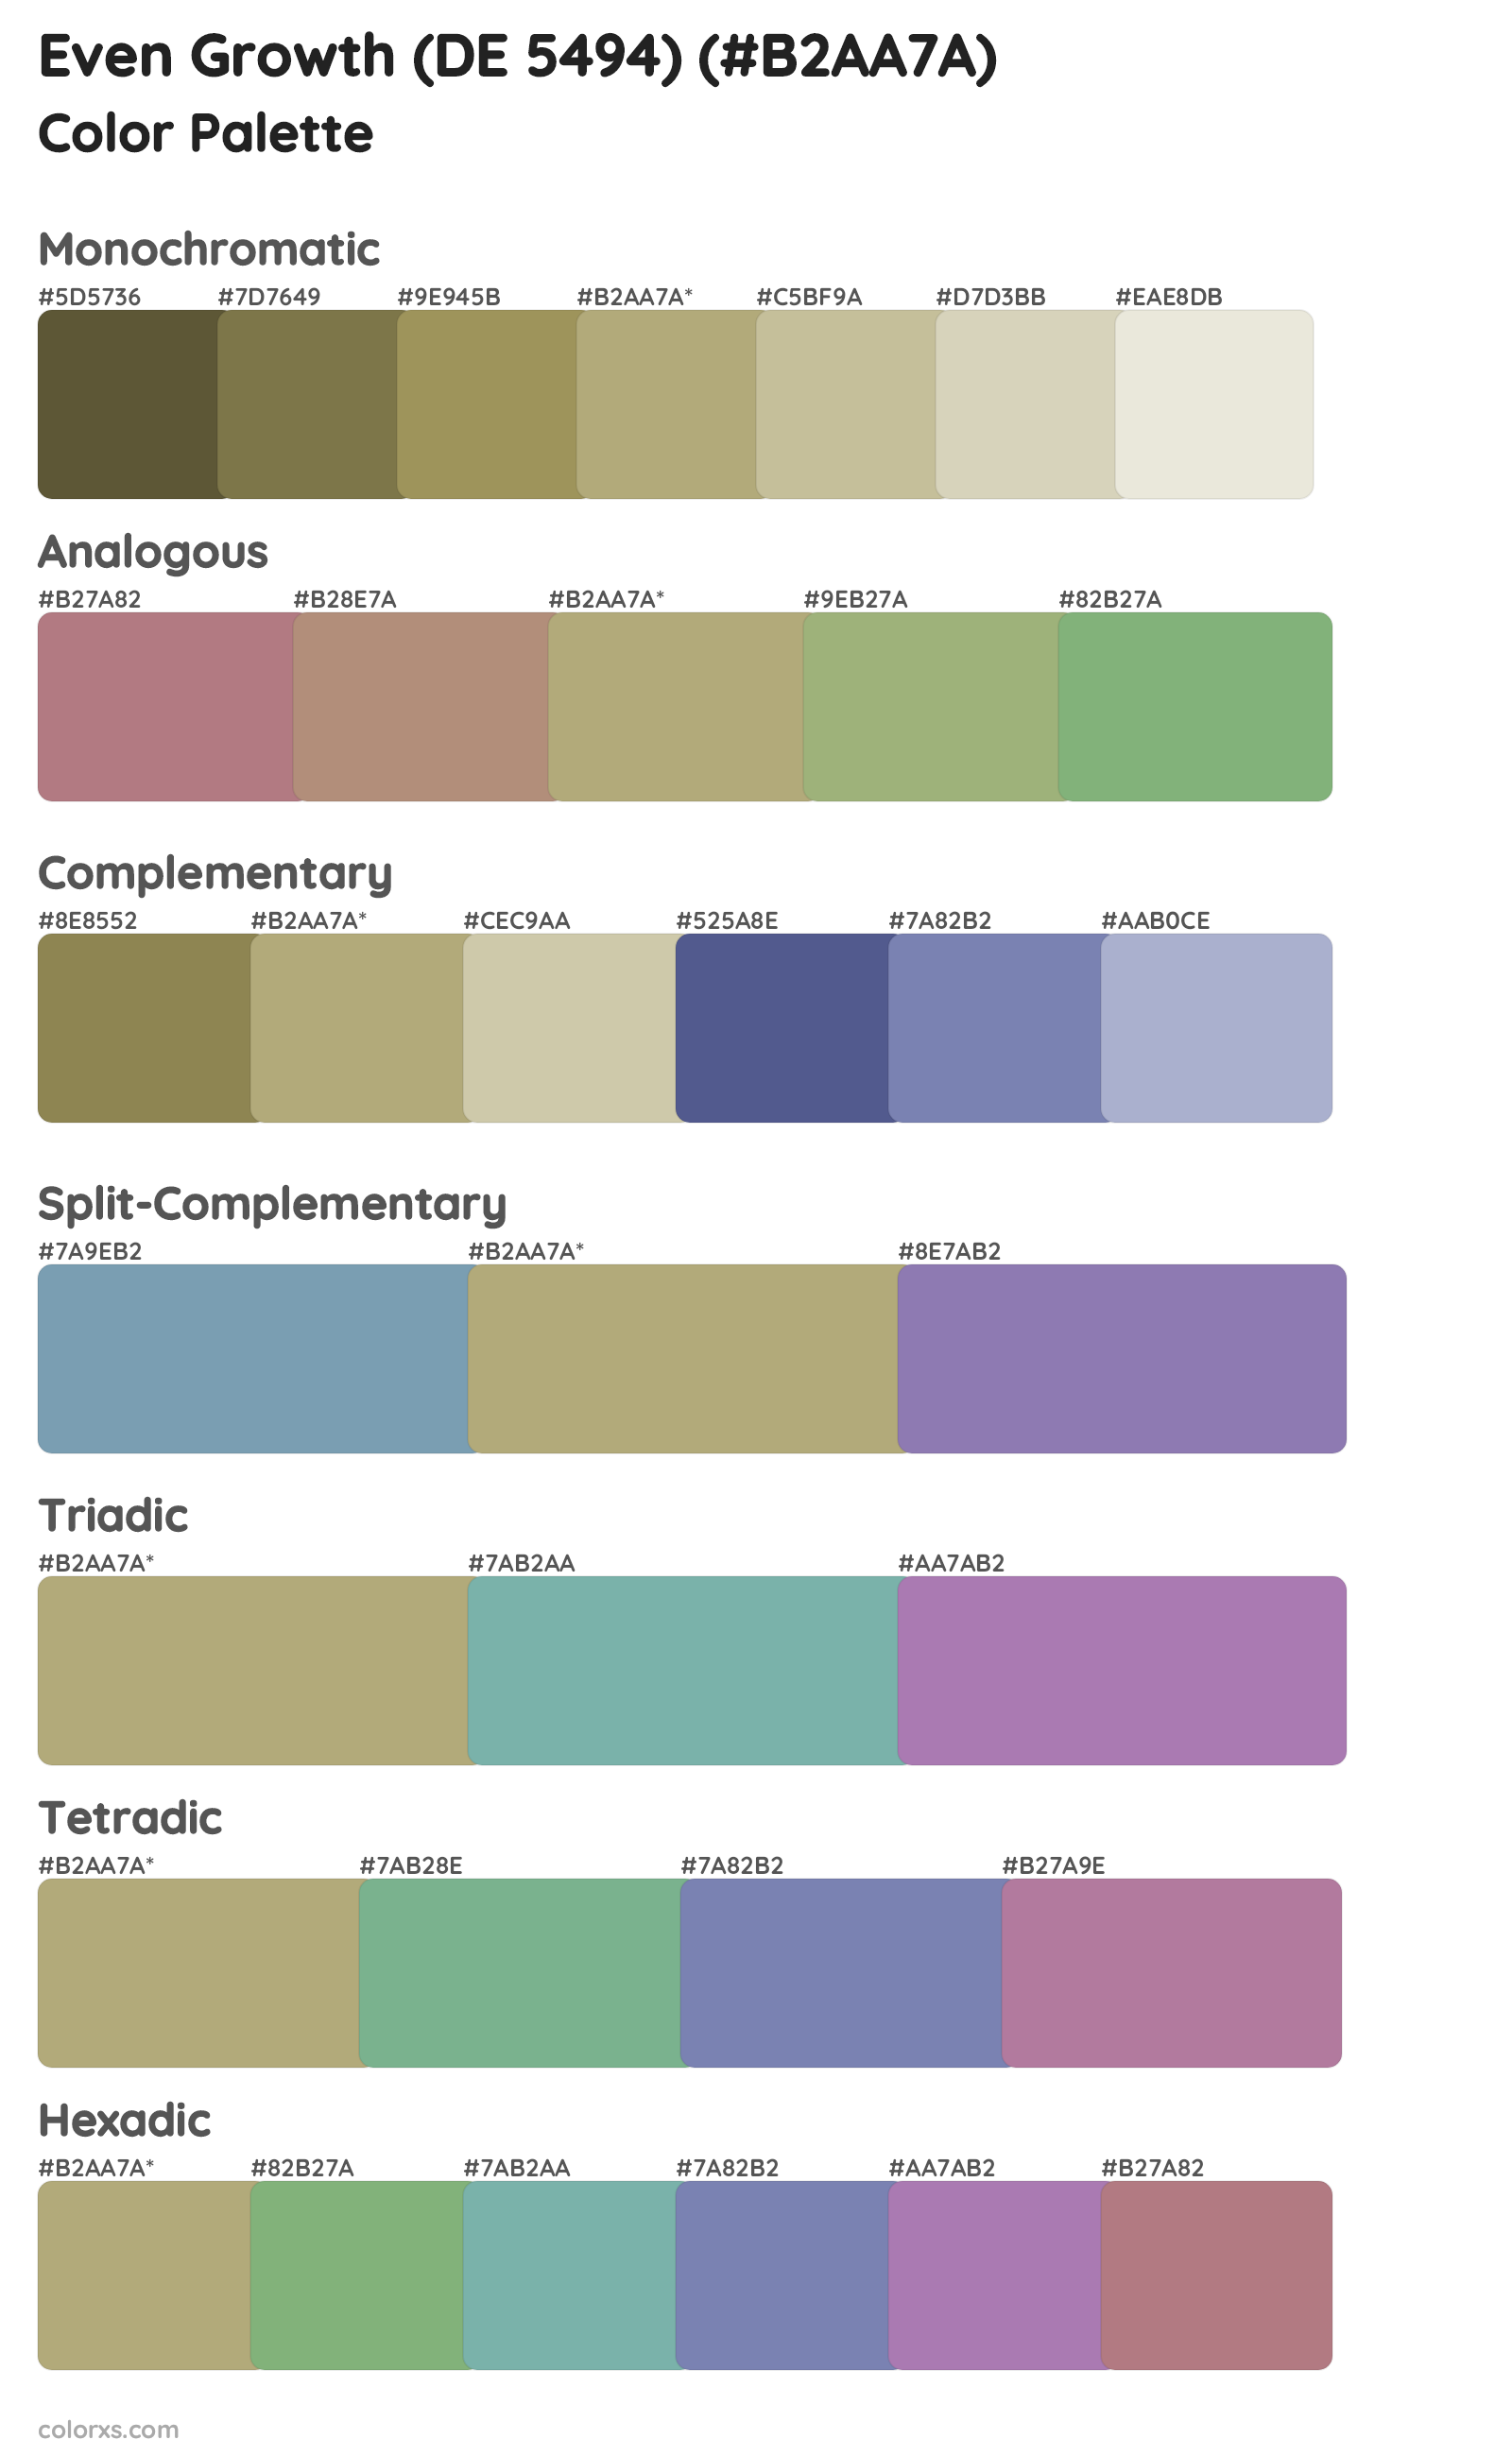 Even Growth (DE 5494) Color Scheme Palettes